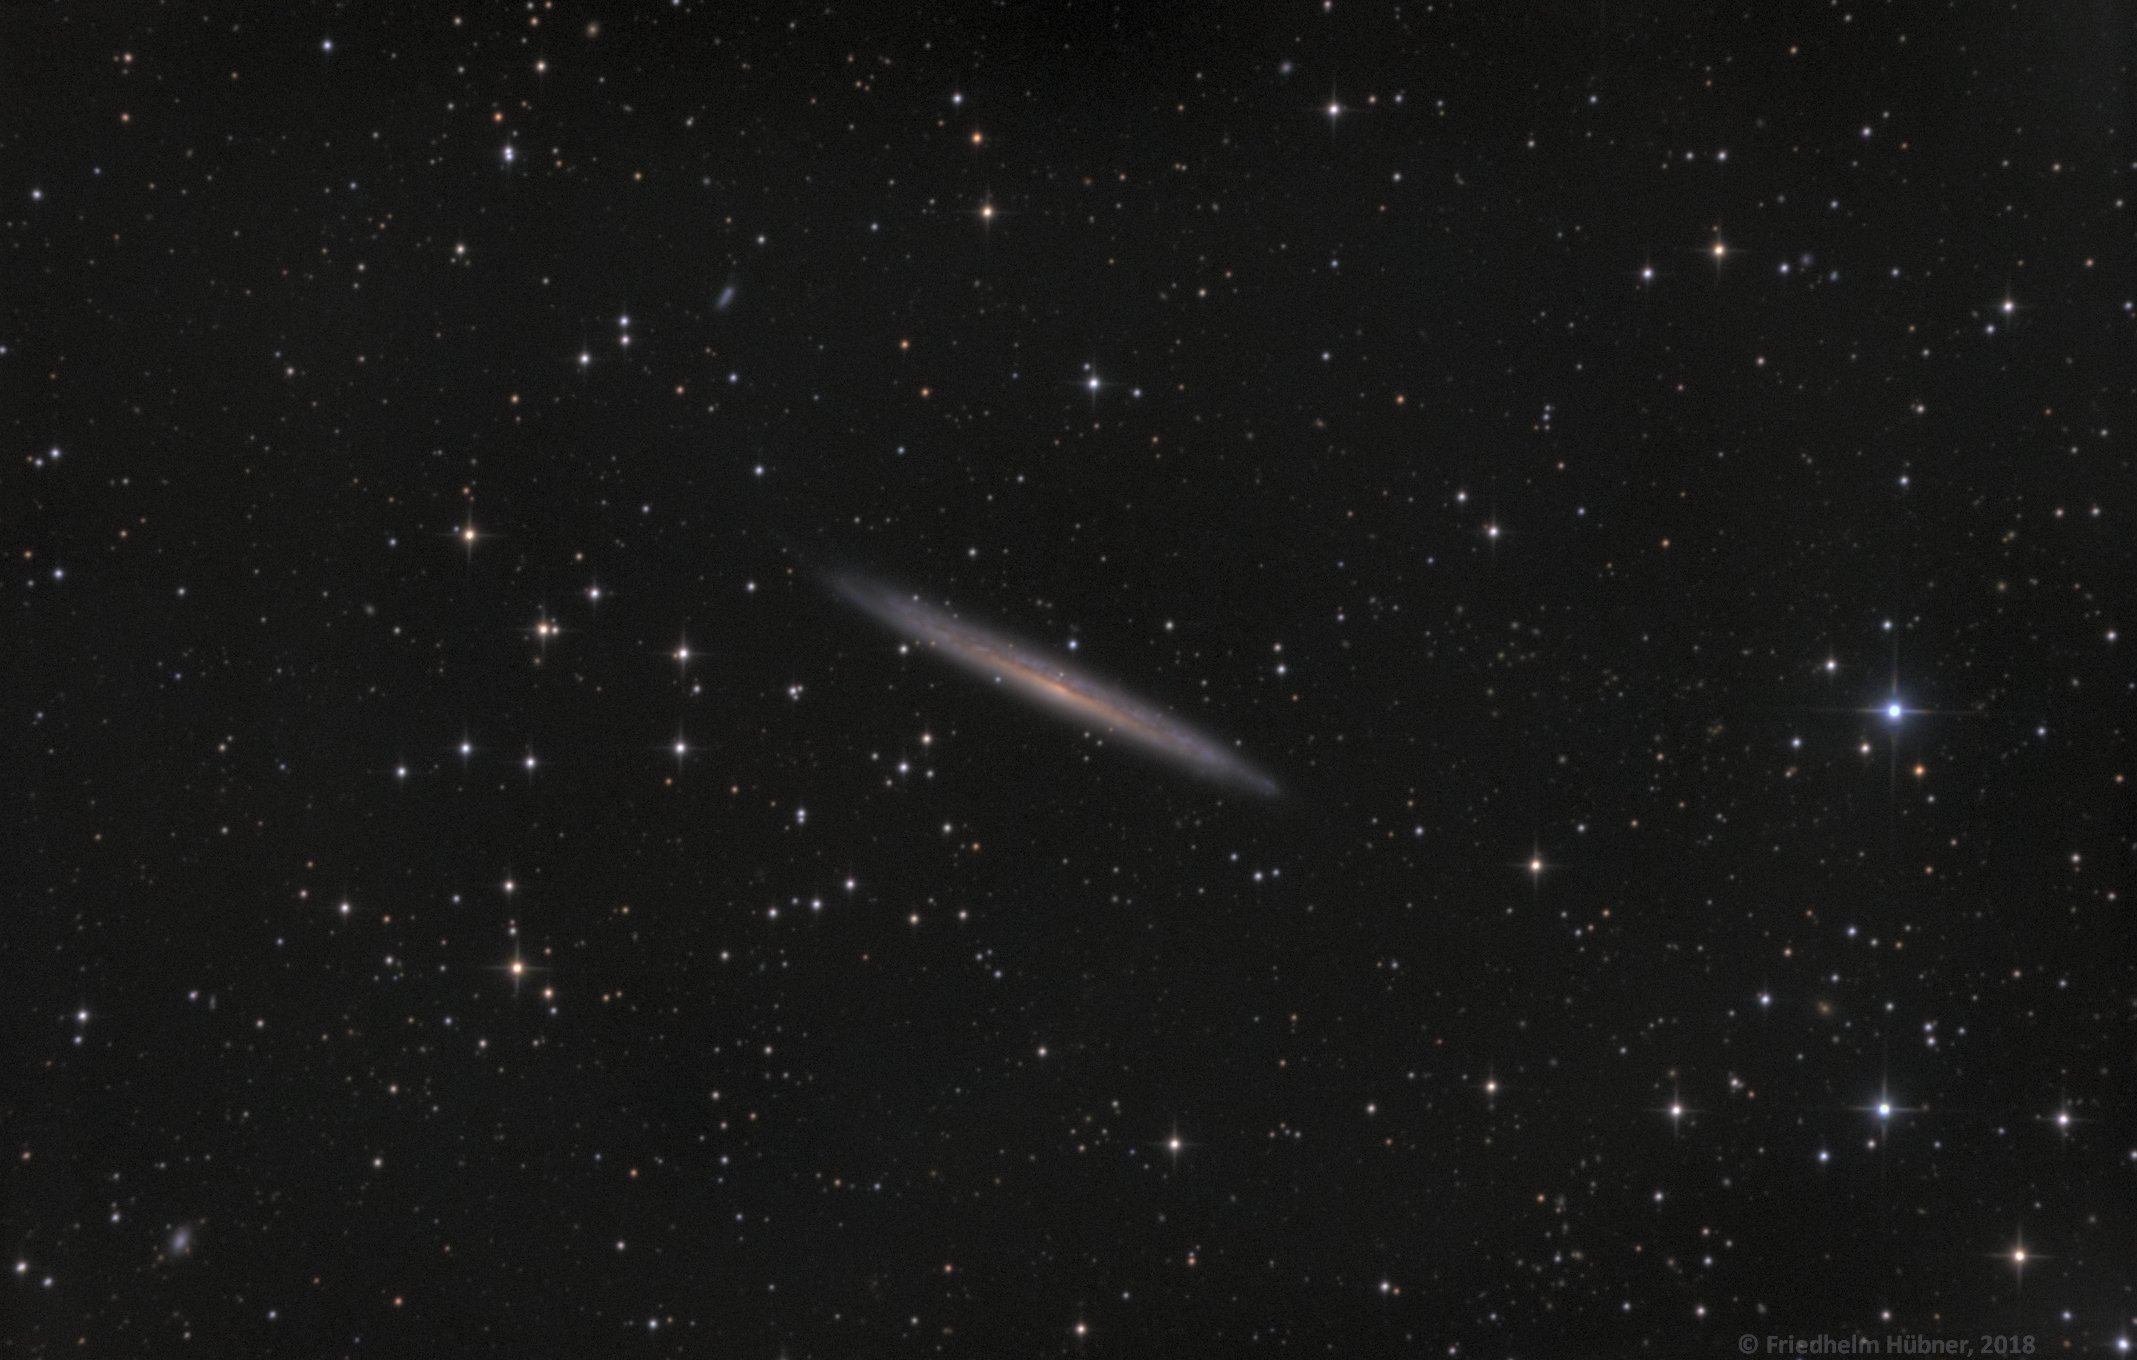 NGC 5907 (Dra)